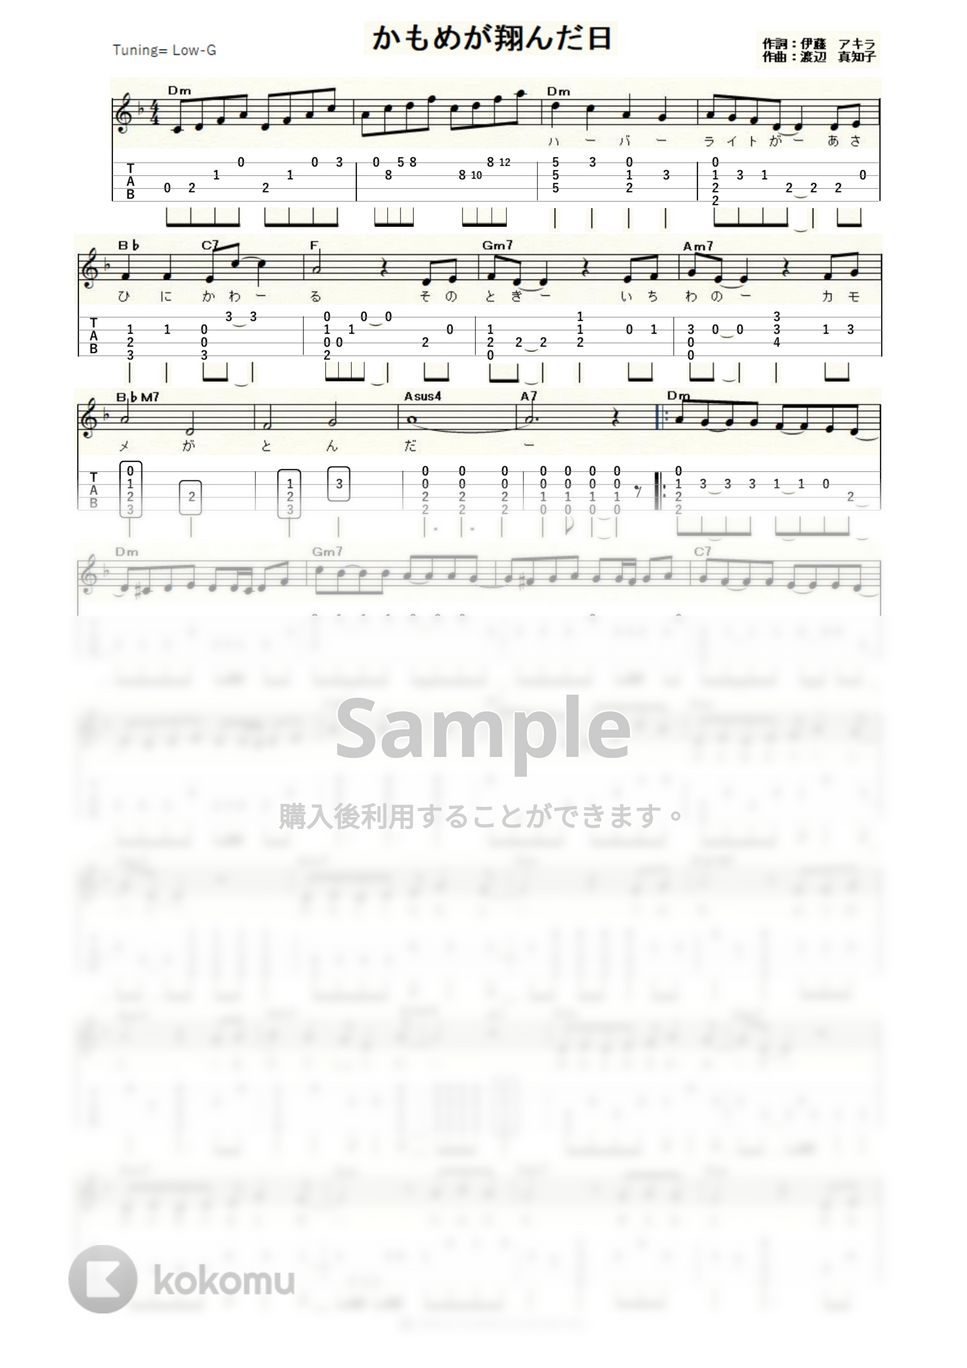 渡辺真知子 - かもめが翔んだ日 (ｳｸﾚﾚｿﾛ / Low-G / 中～上級) by ukulelepapa